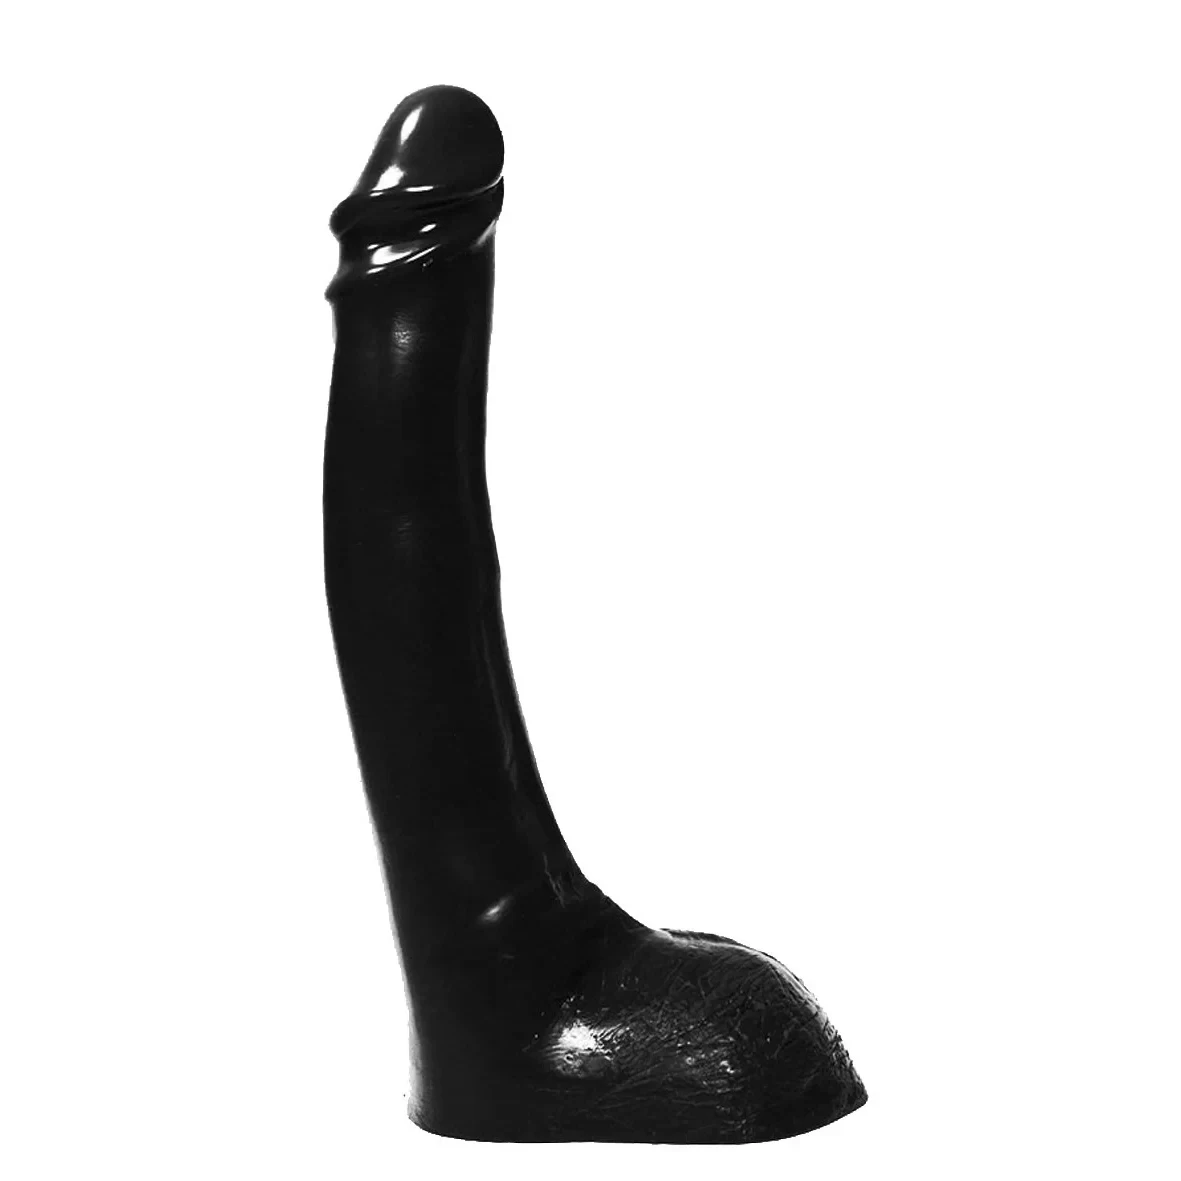 Duże czarne zdjęcia penisa